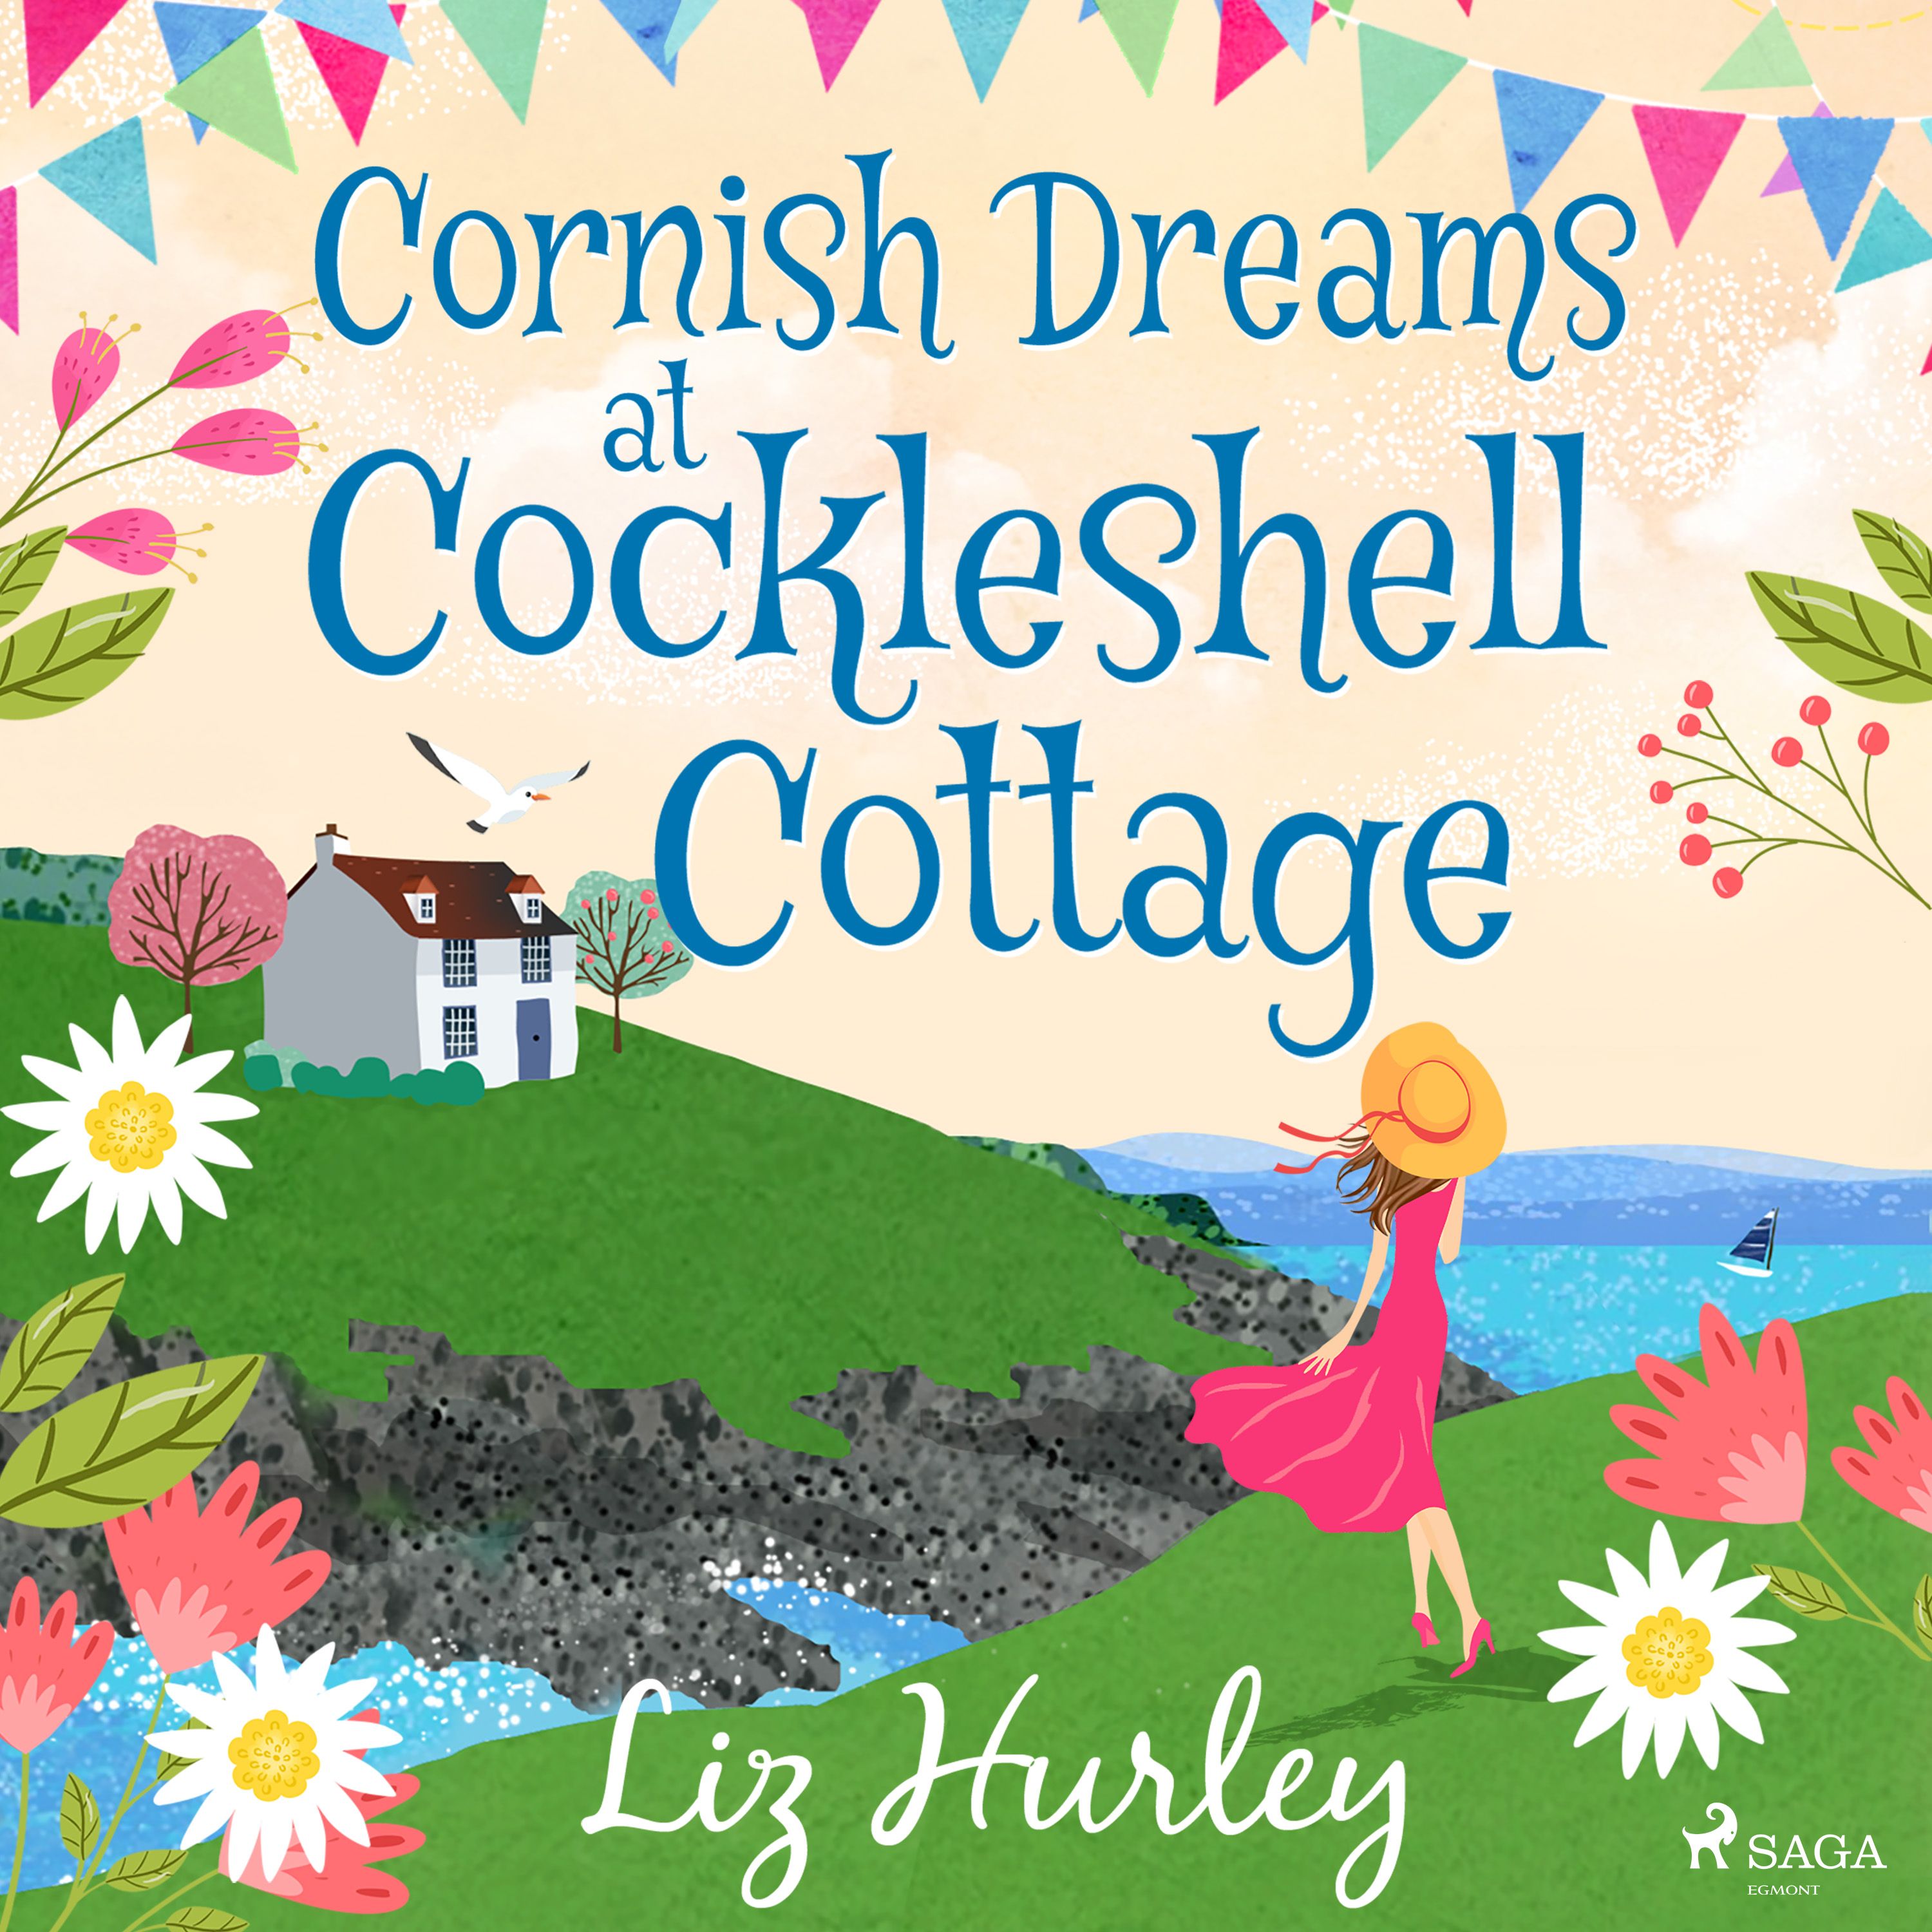 Cornish Dreams at Cockleshell Cottage, ljudbok av Liz Hurley